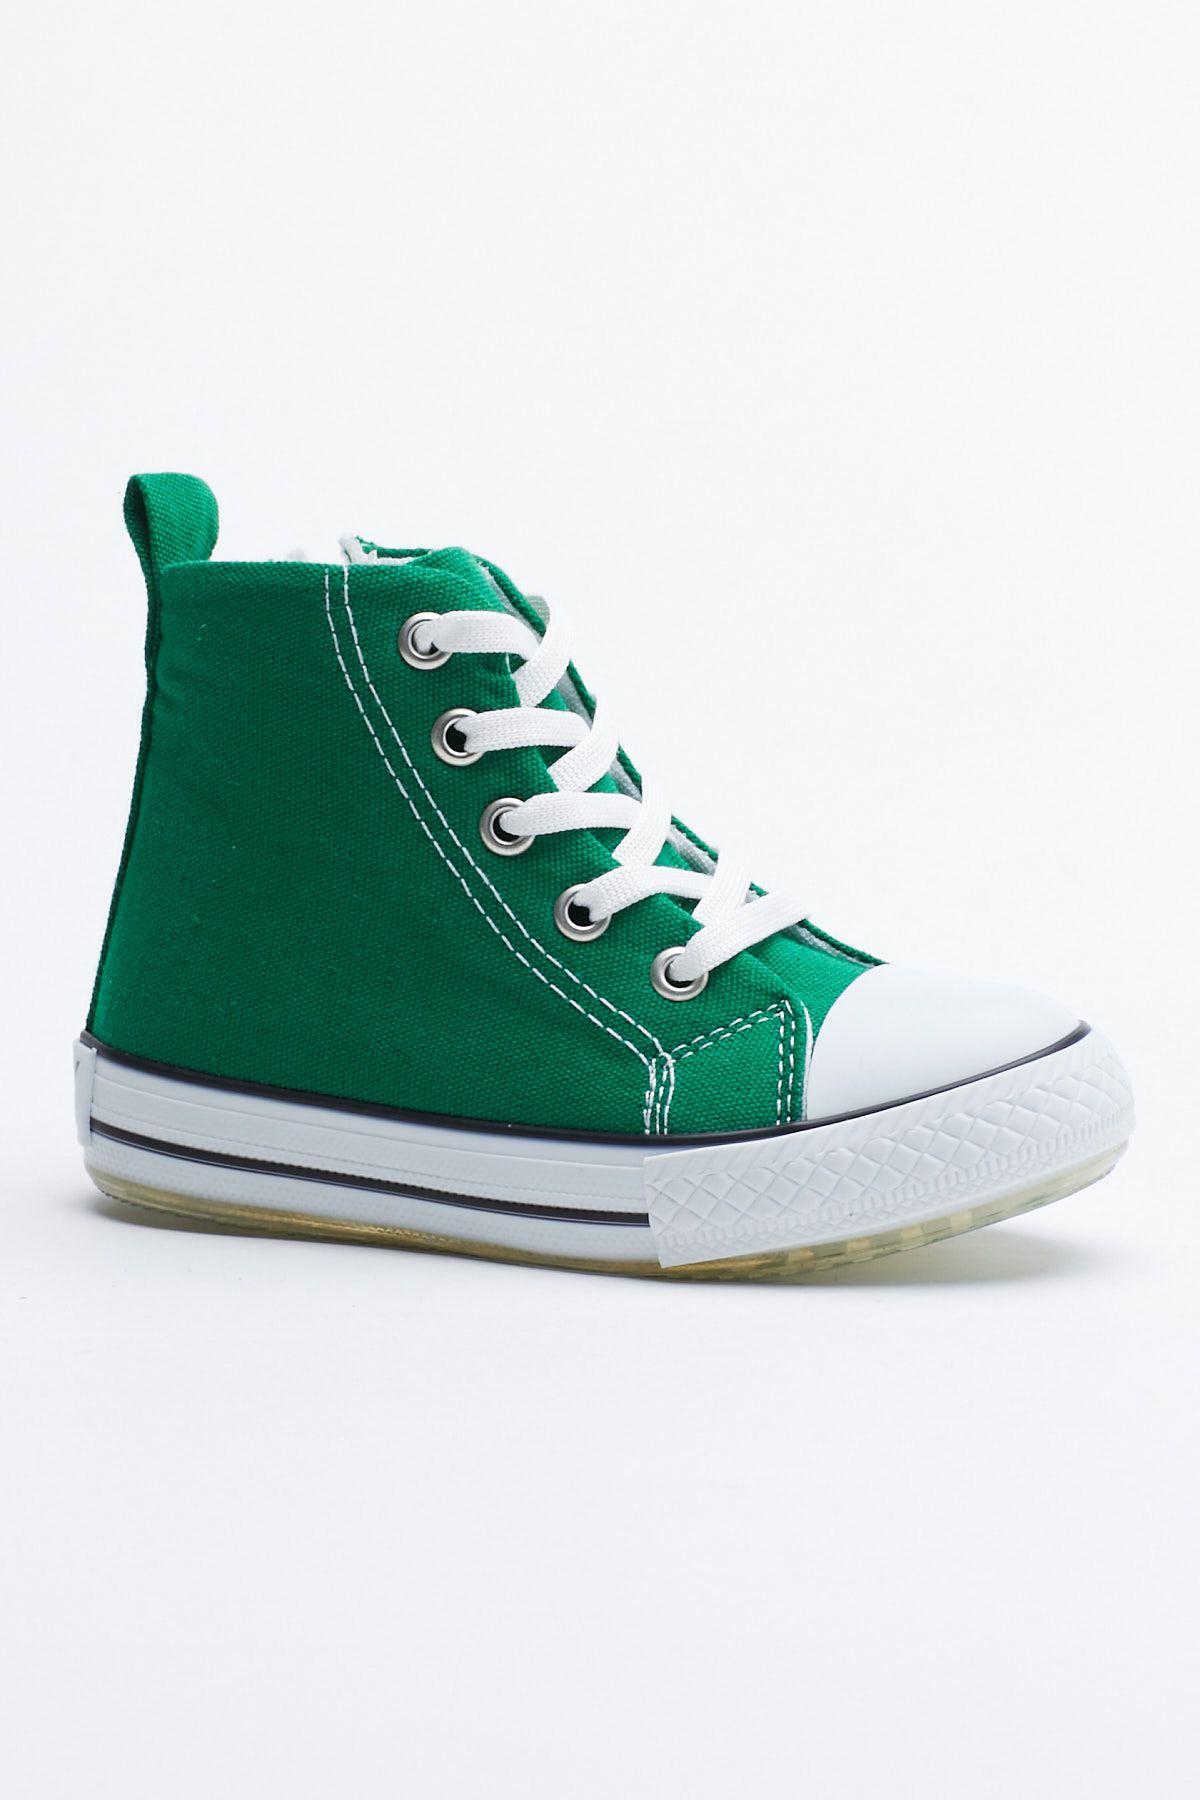 Tonny Black Çocuk Unisex Yeşil Işıklı Spor Ayakkabı Uzun Tb999